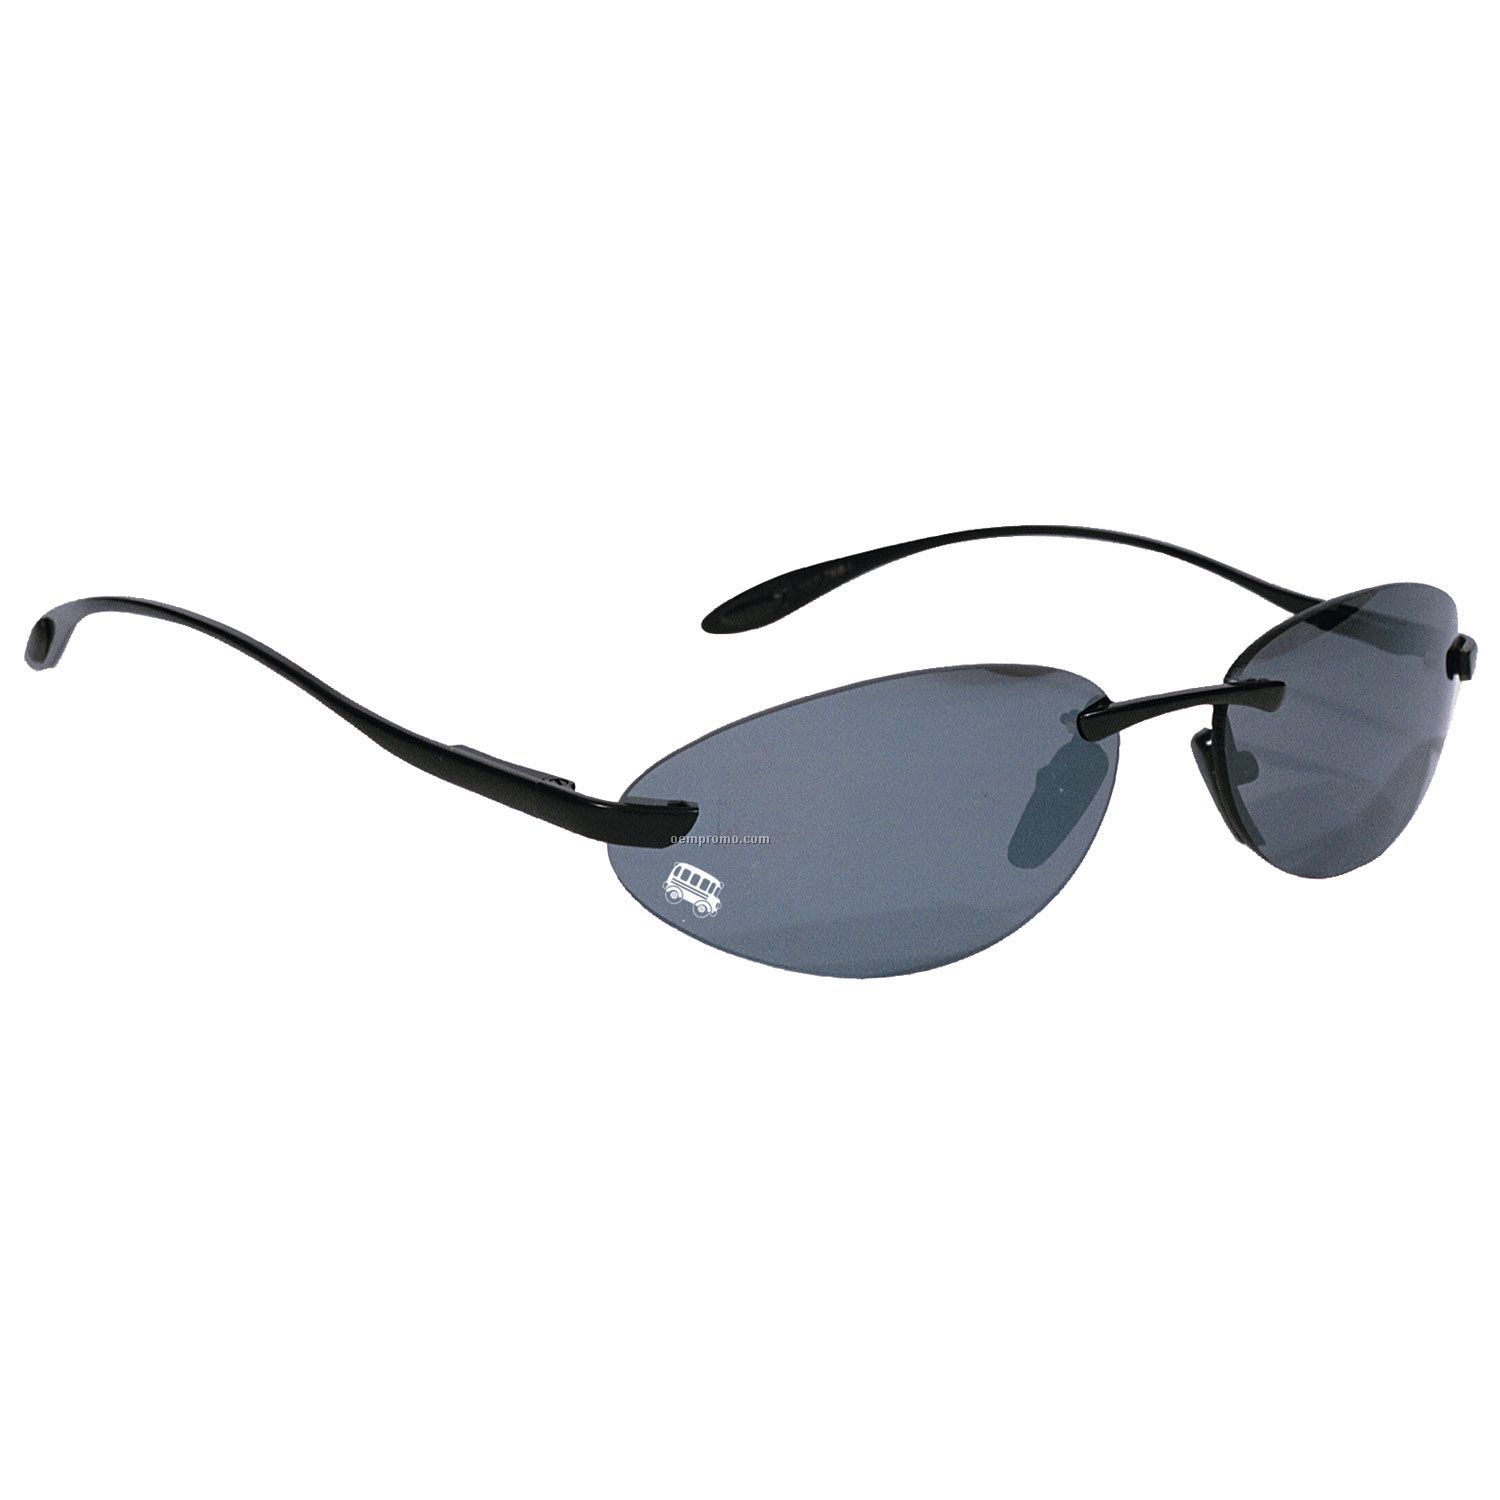 Black Rimless Metal Wrap Frame Sunglasses W/ Smoke Lens